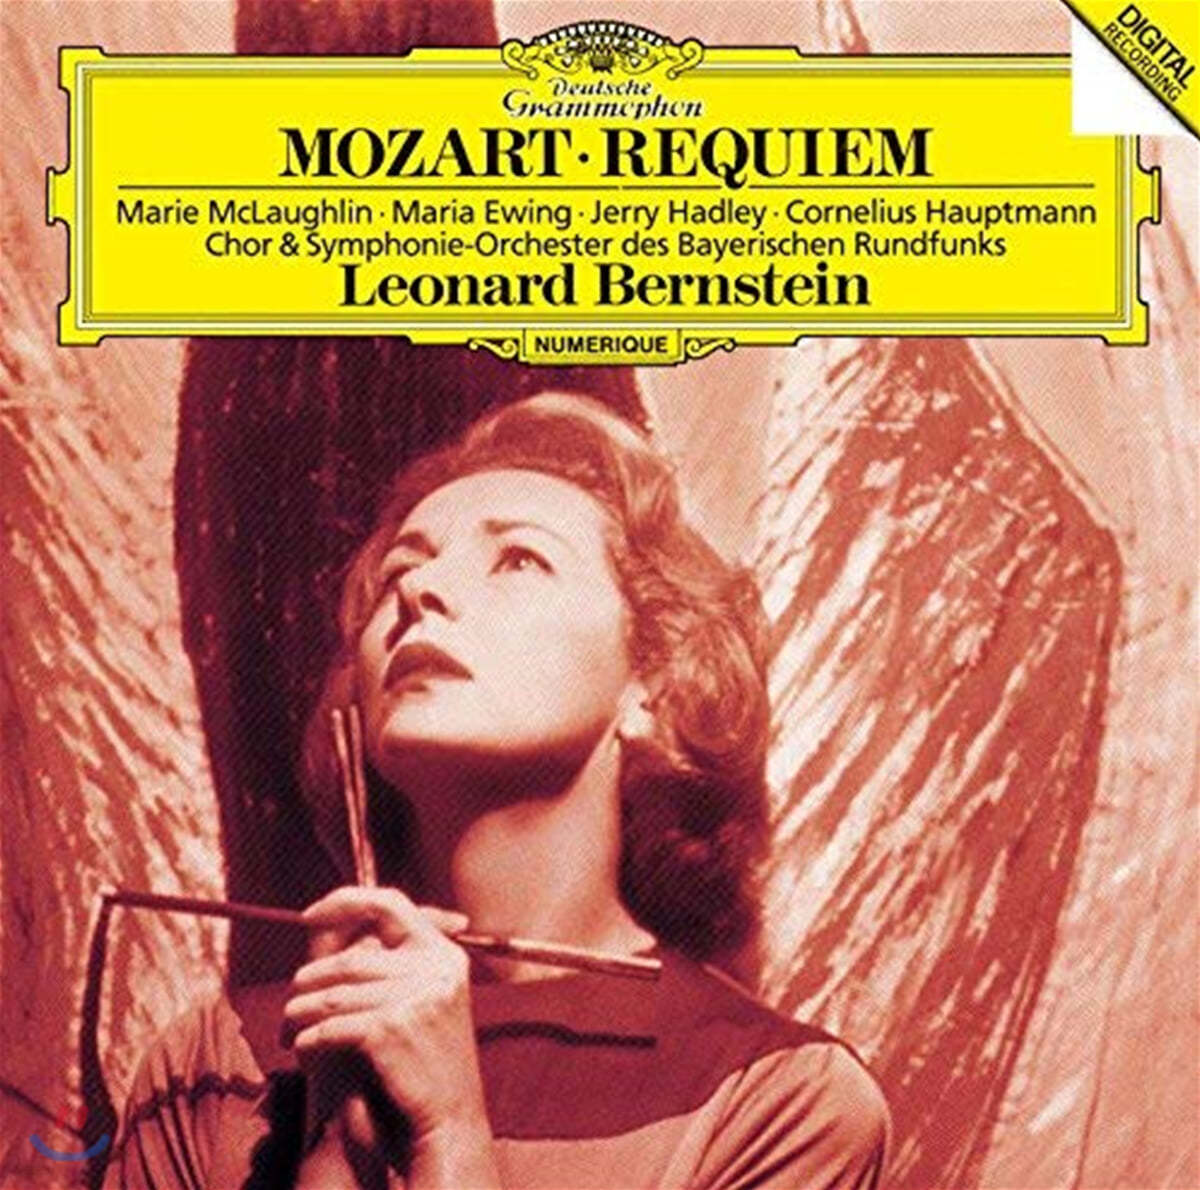 Leonard Bernstein 모차르트: 레퀴엠 (Mozart: Requiem K626)